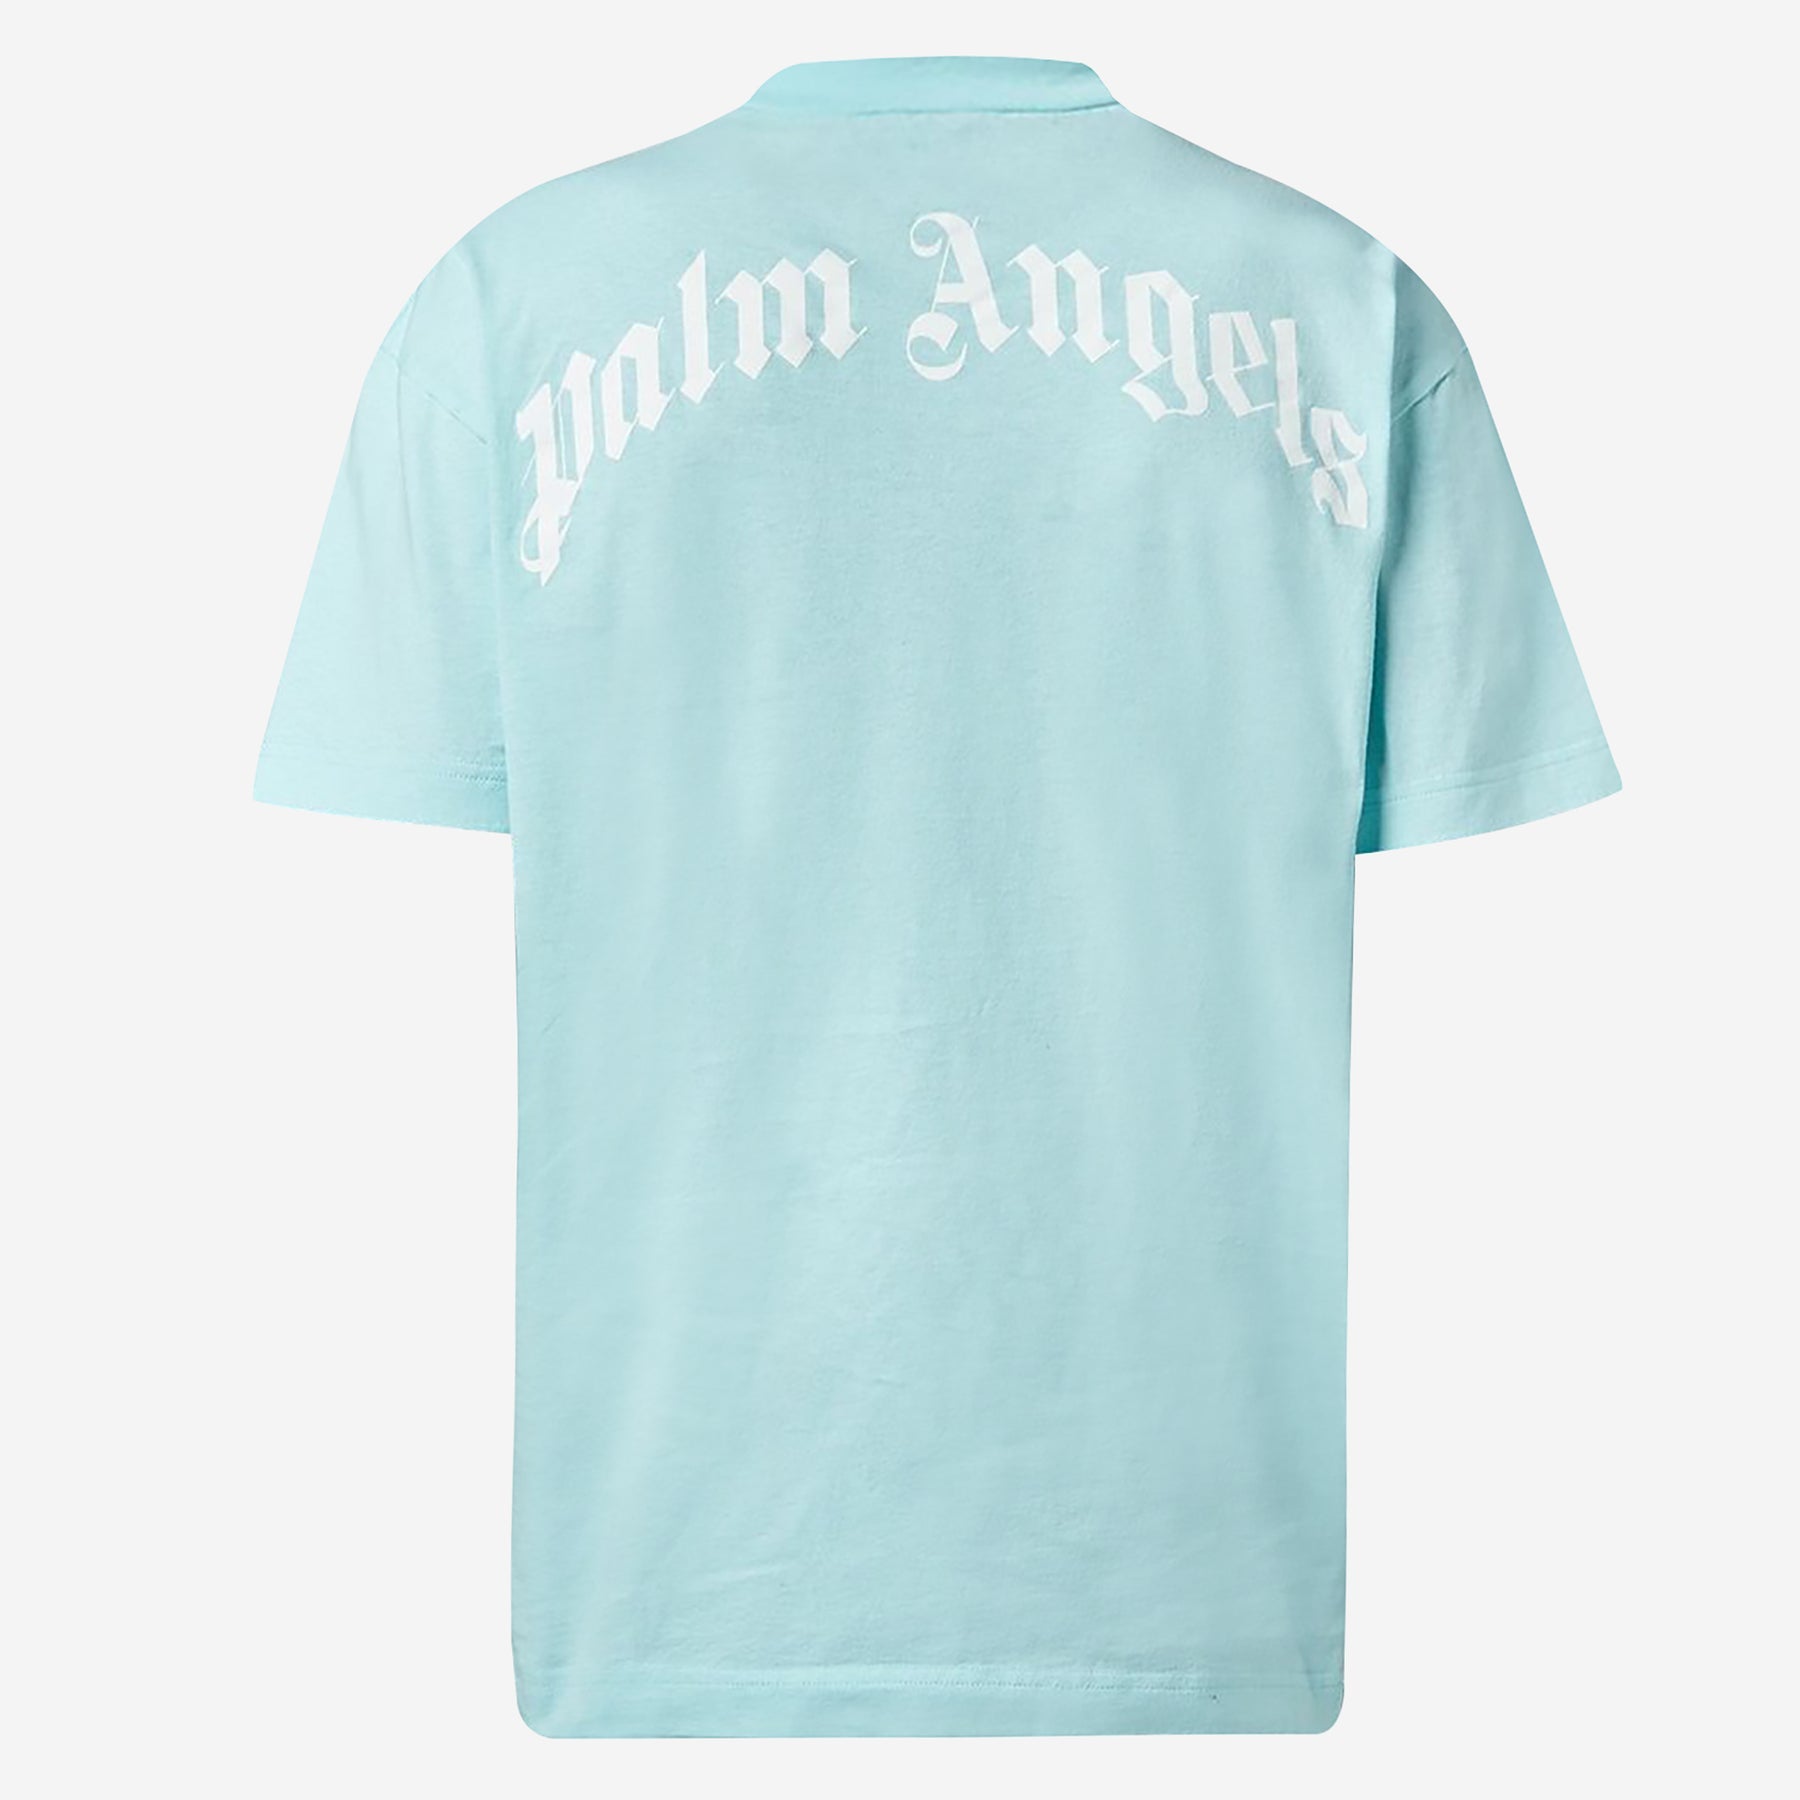 Palm Angels Shark Logo T-Shirt - Light Blue - Escape Menswear